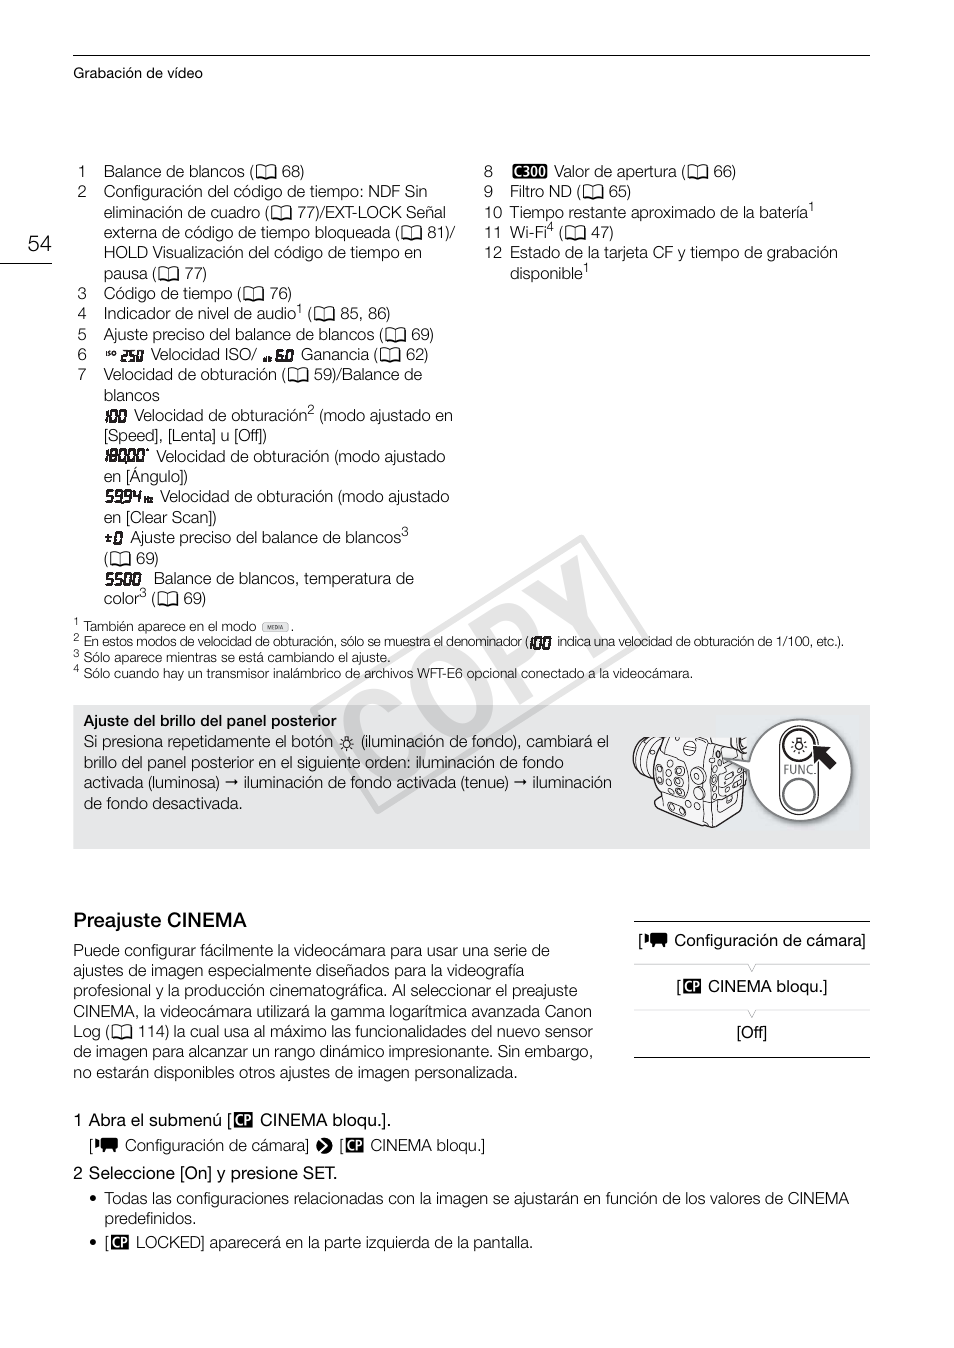 Preajuste cinema 54, Cop y | Canon EOS C300 PL Manual del usuario | Página 54 / 190